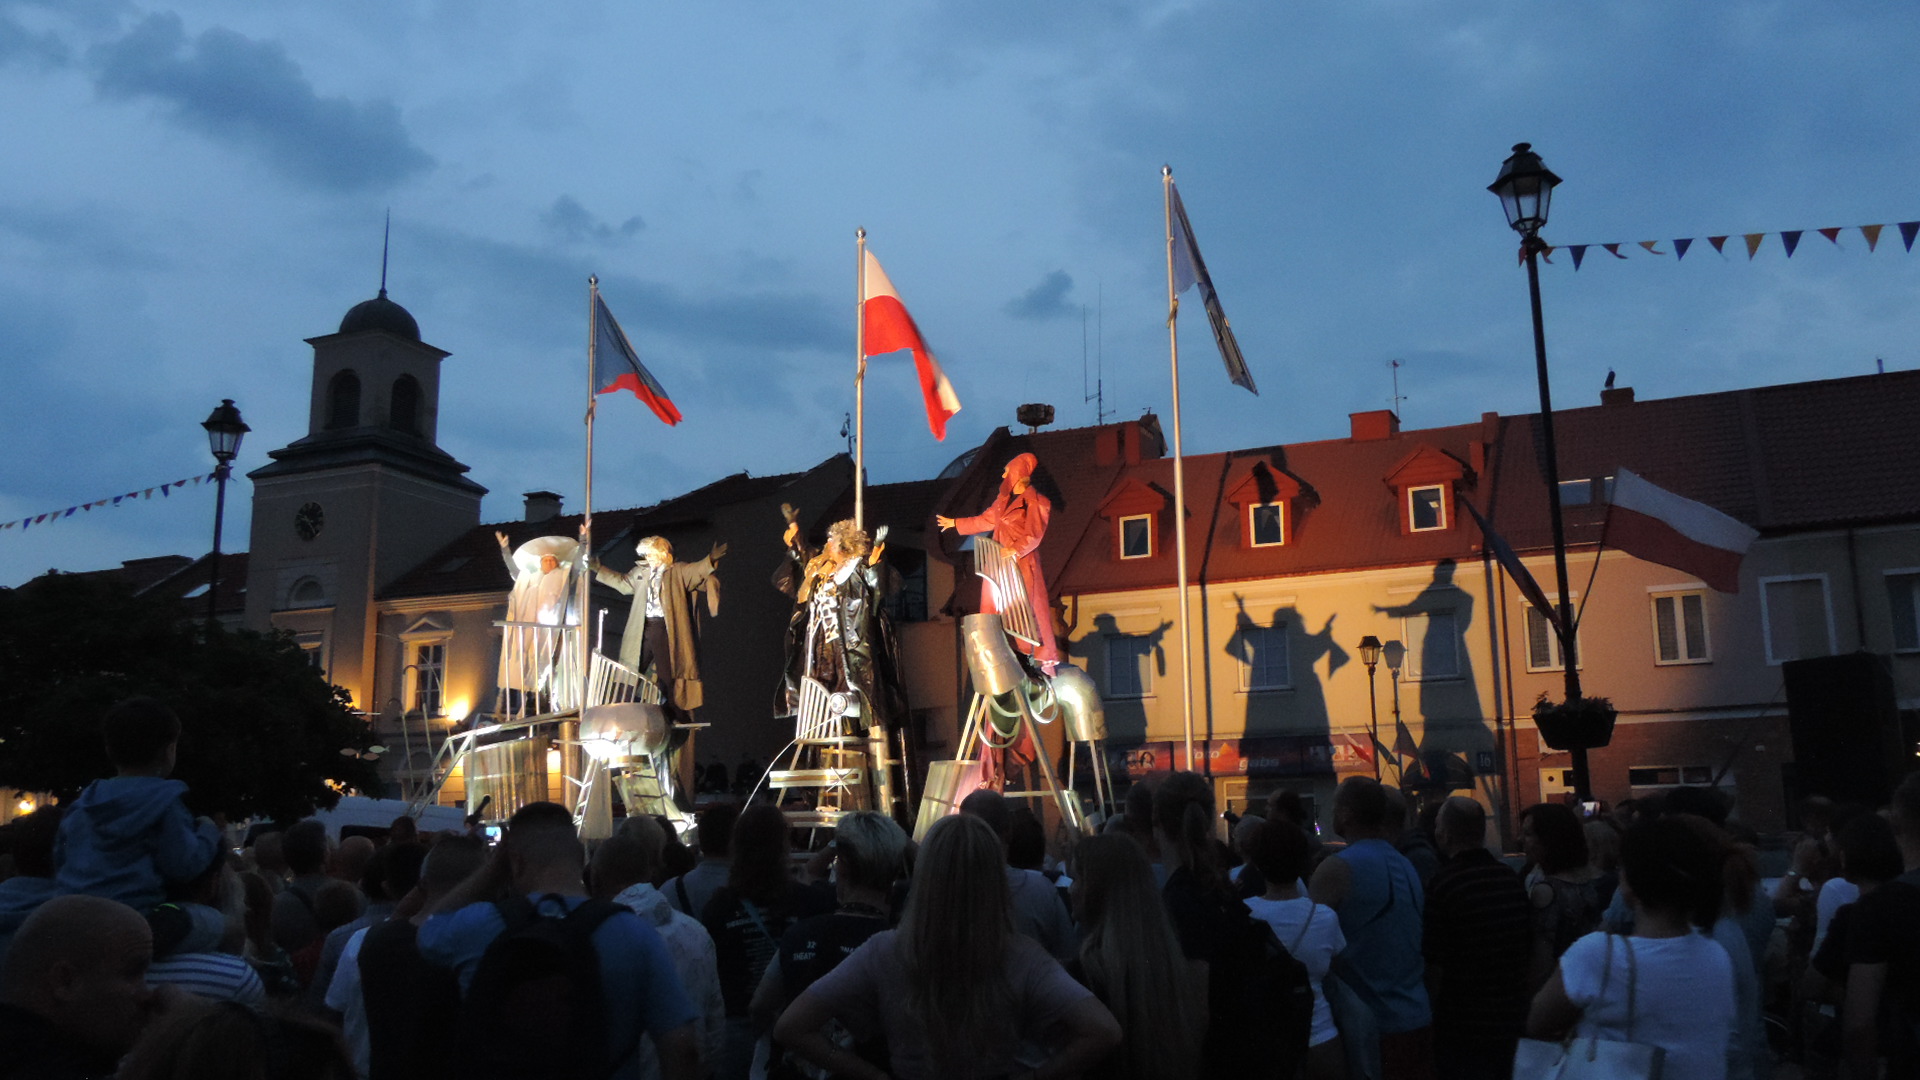 Międzynarodowy Festiwal Teatralny "Walizka" w Łomży, fot. Adam Dąbrowski